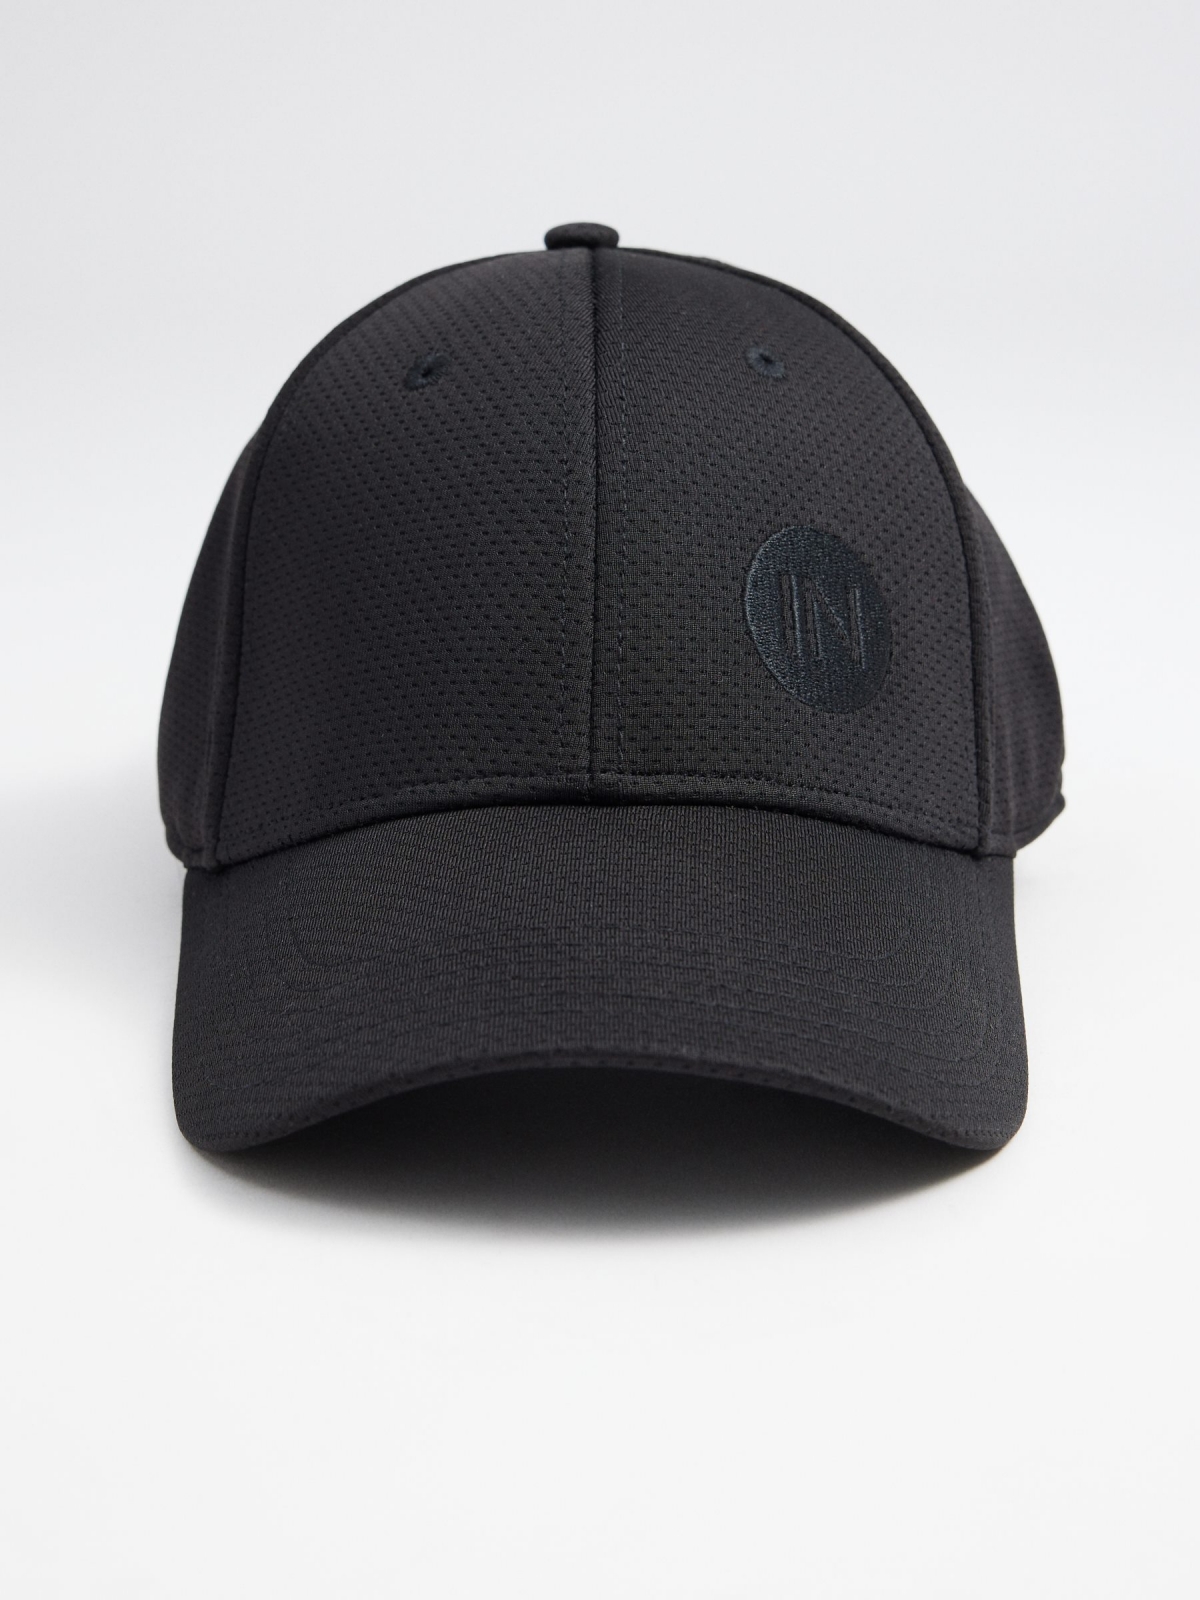 INSIDE baseball cap black